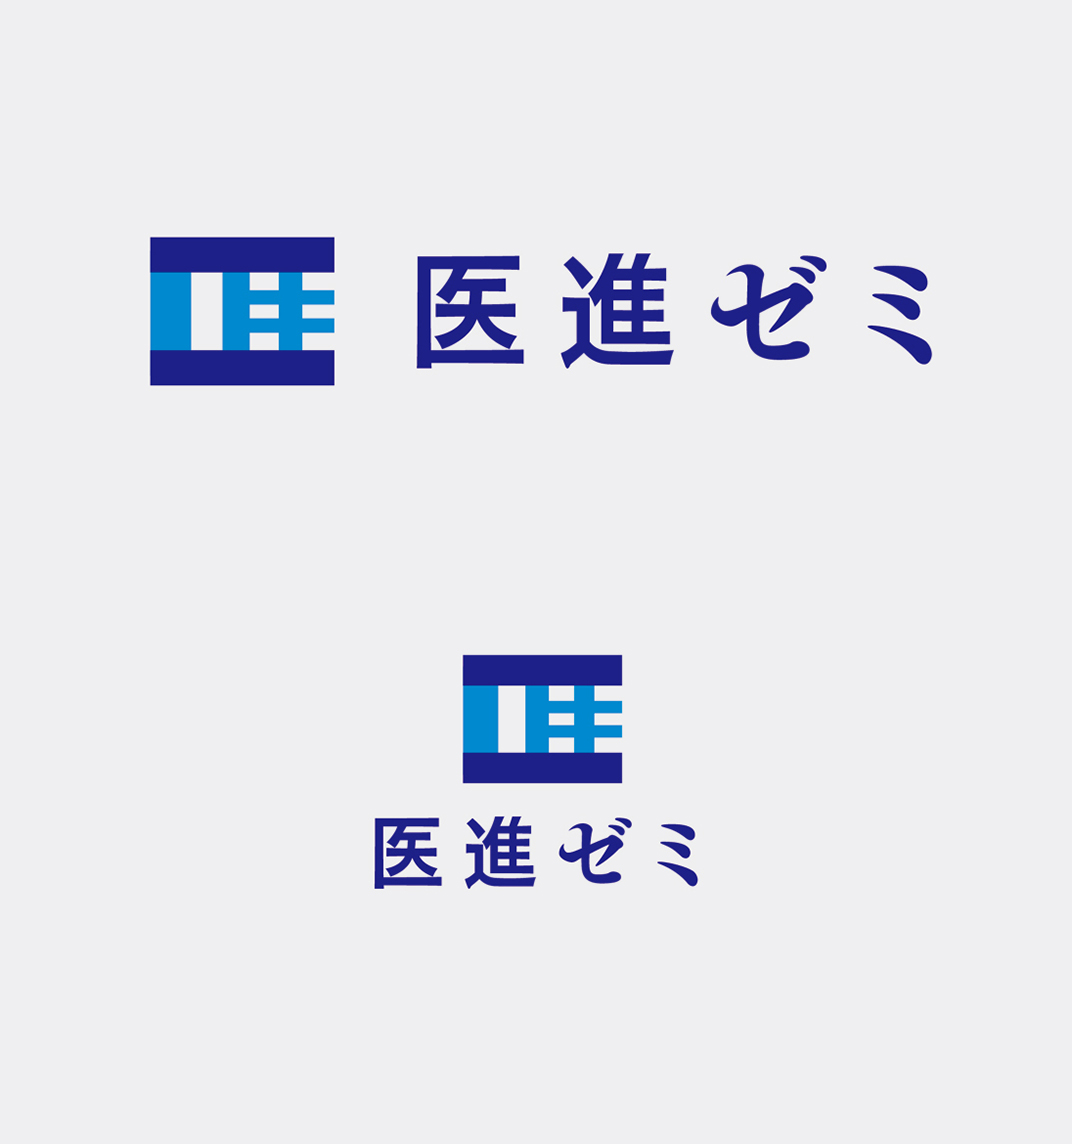 日本大学社团logo设计 北京 上海 珠海 广州 武汉 杭州 佛山 澳门 logo设计 vi设计 空间设计